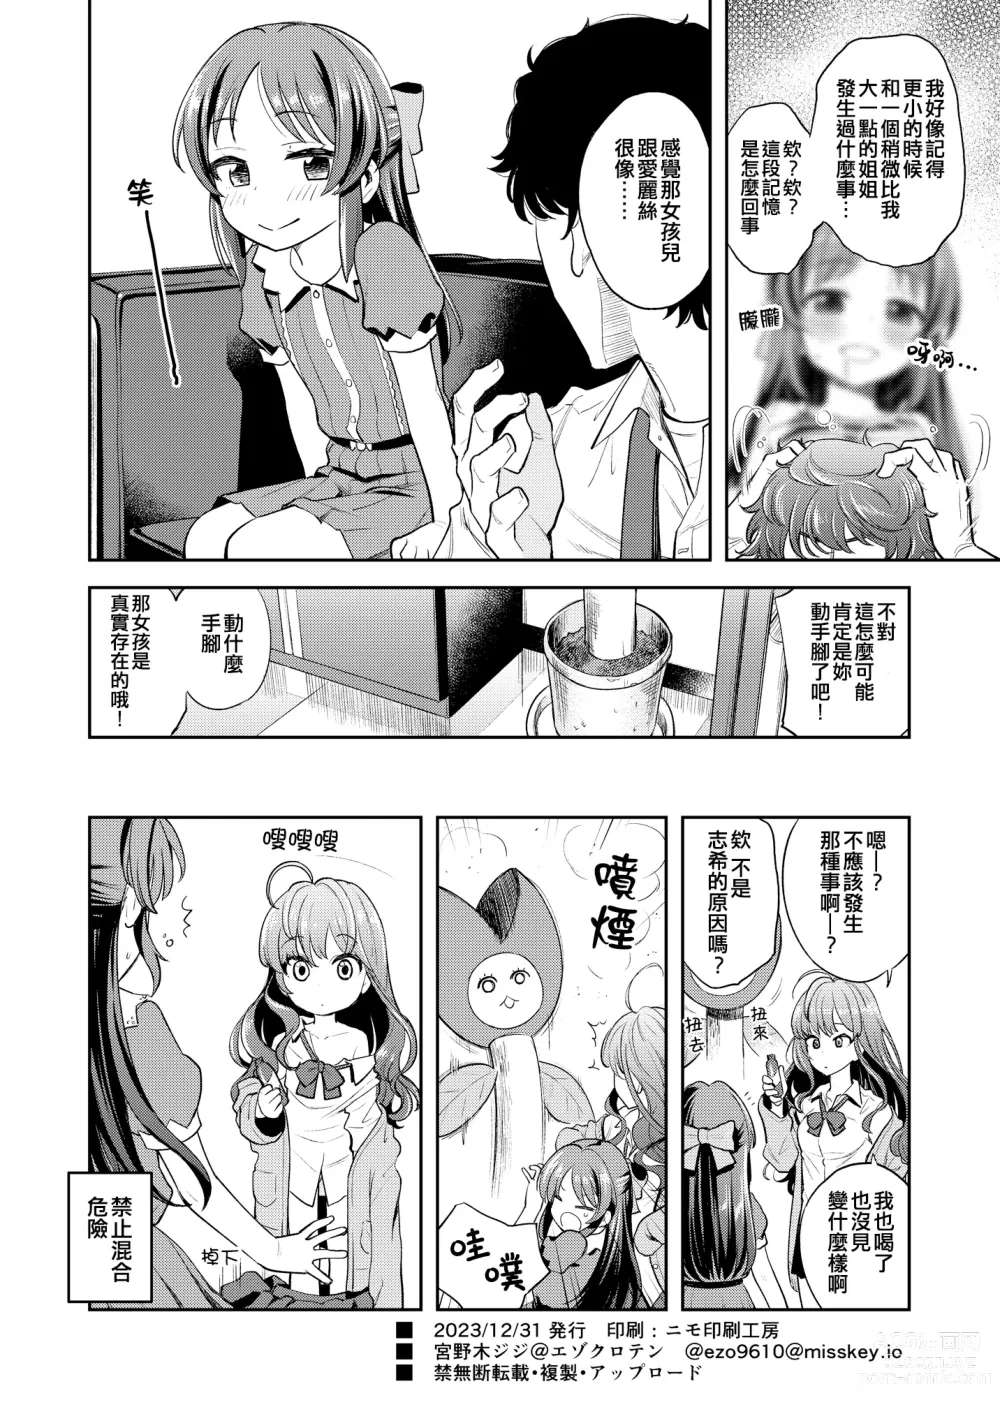 Page 26 of doujinshi Warui Ko Arisu inPio